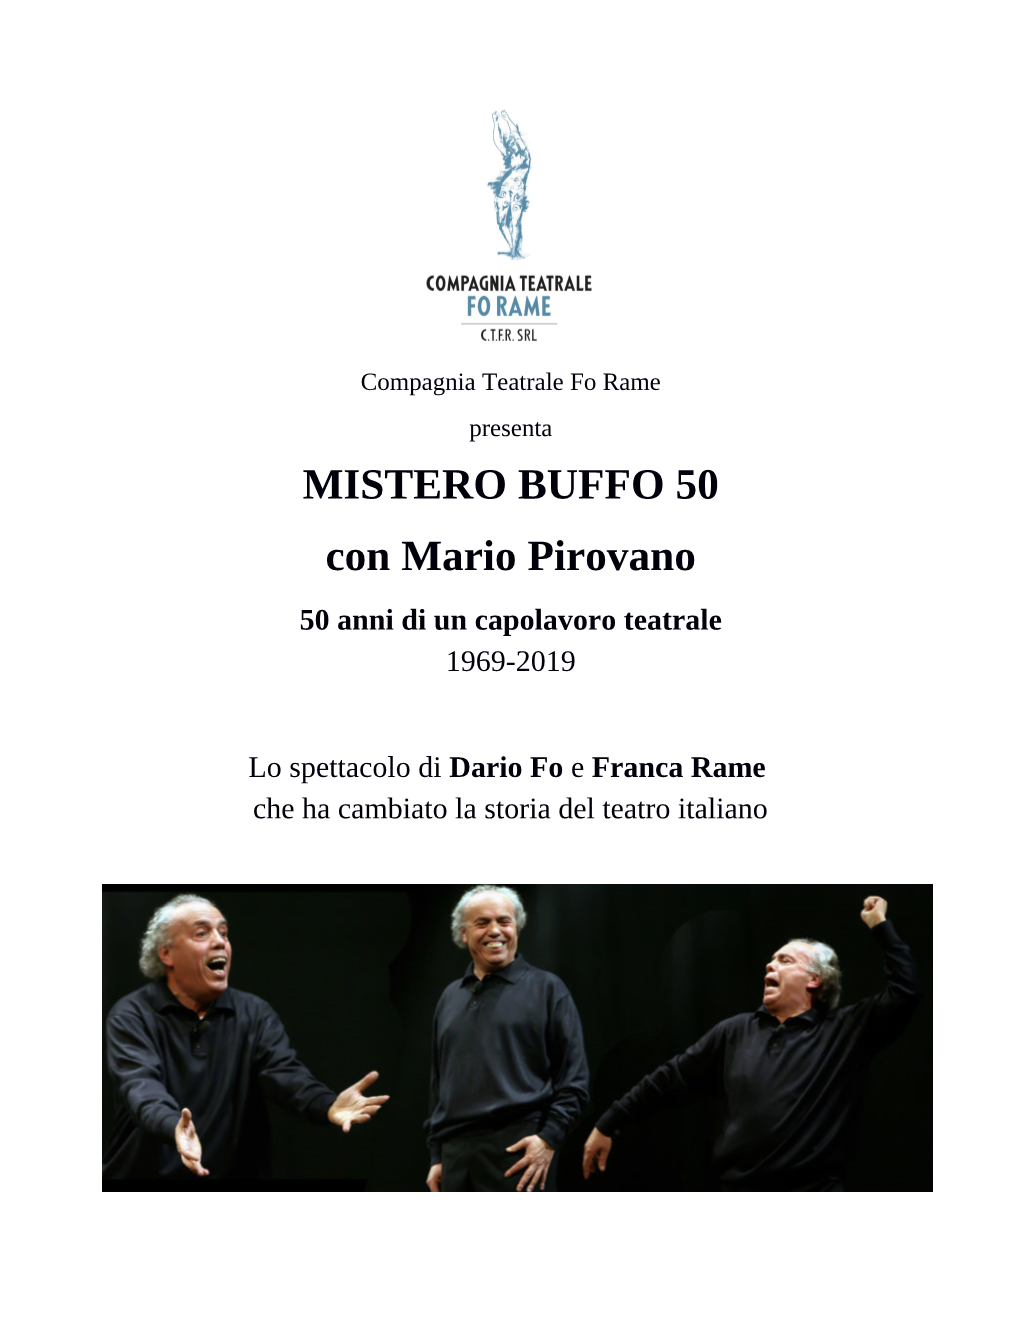 MISTERO BUFFO 50 Con Mario Pirovano 50 Anni Di Un Capolavoro Teatrale 1969-2019